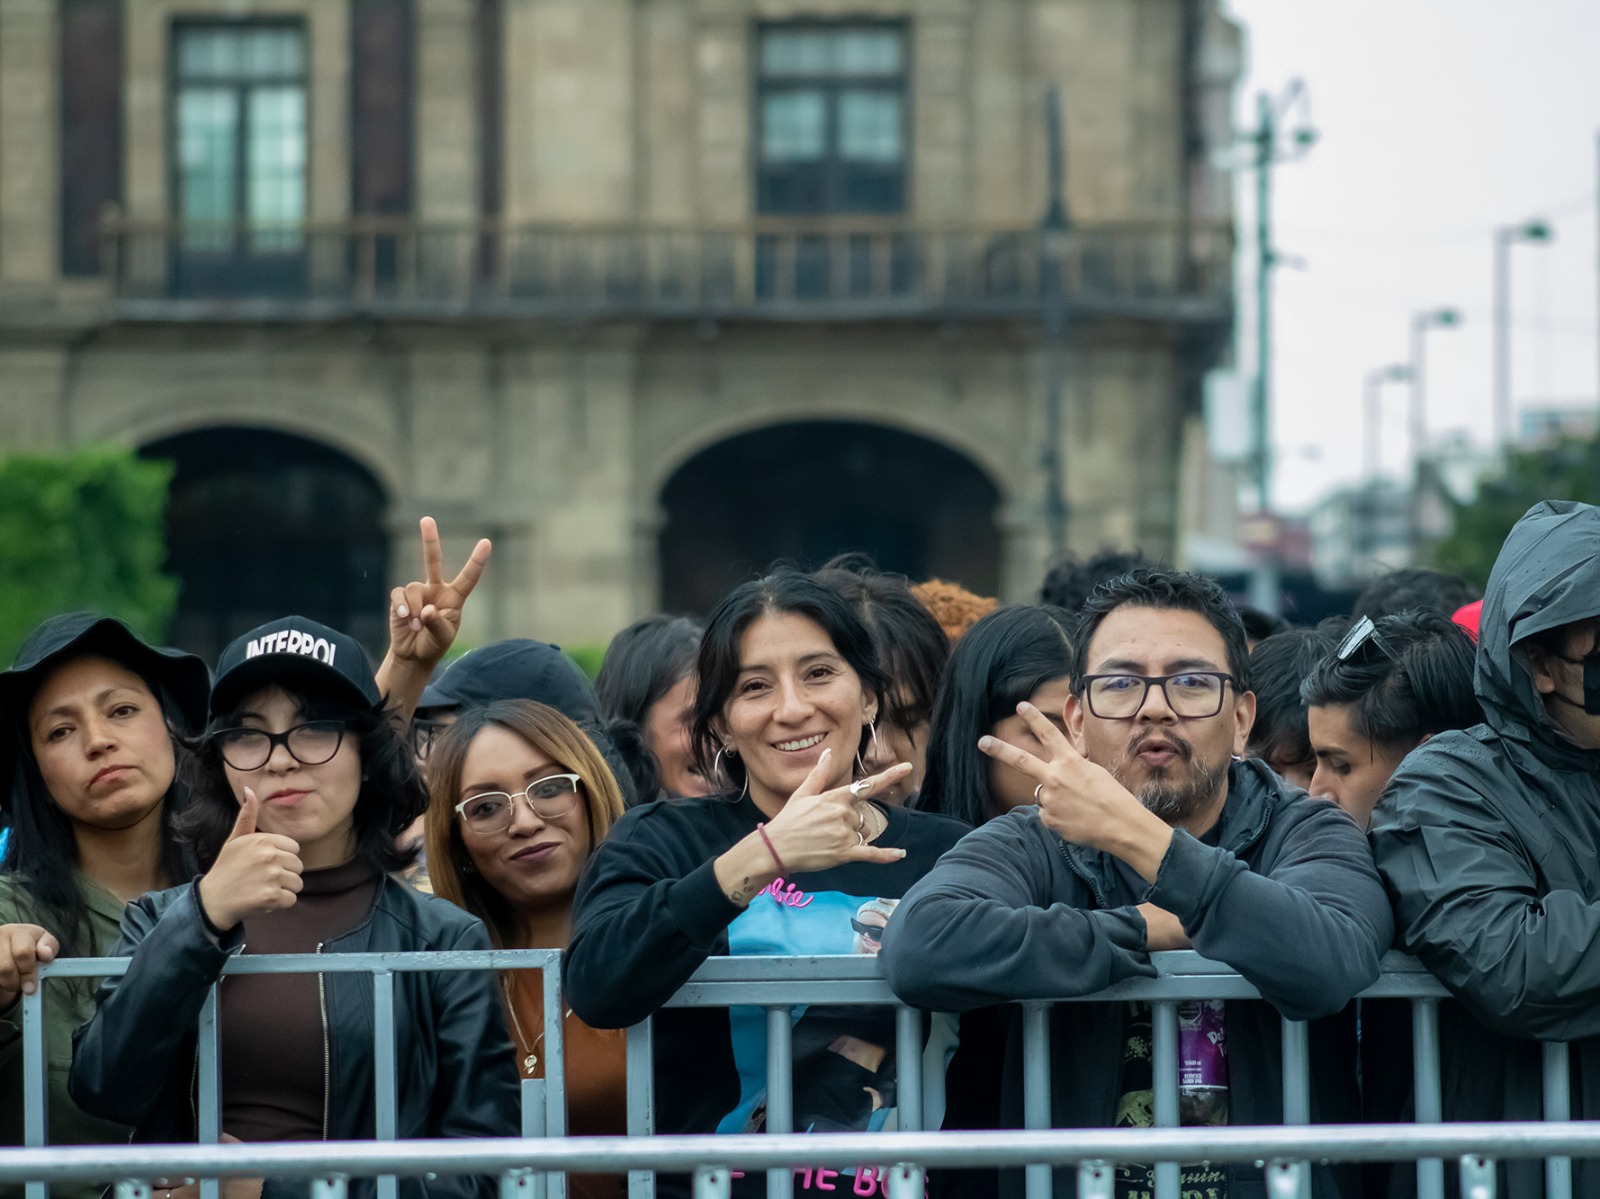 Interpol reúne a 160 mil asistentes en concierto gratuito en el Zócalo capitalino